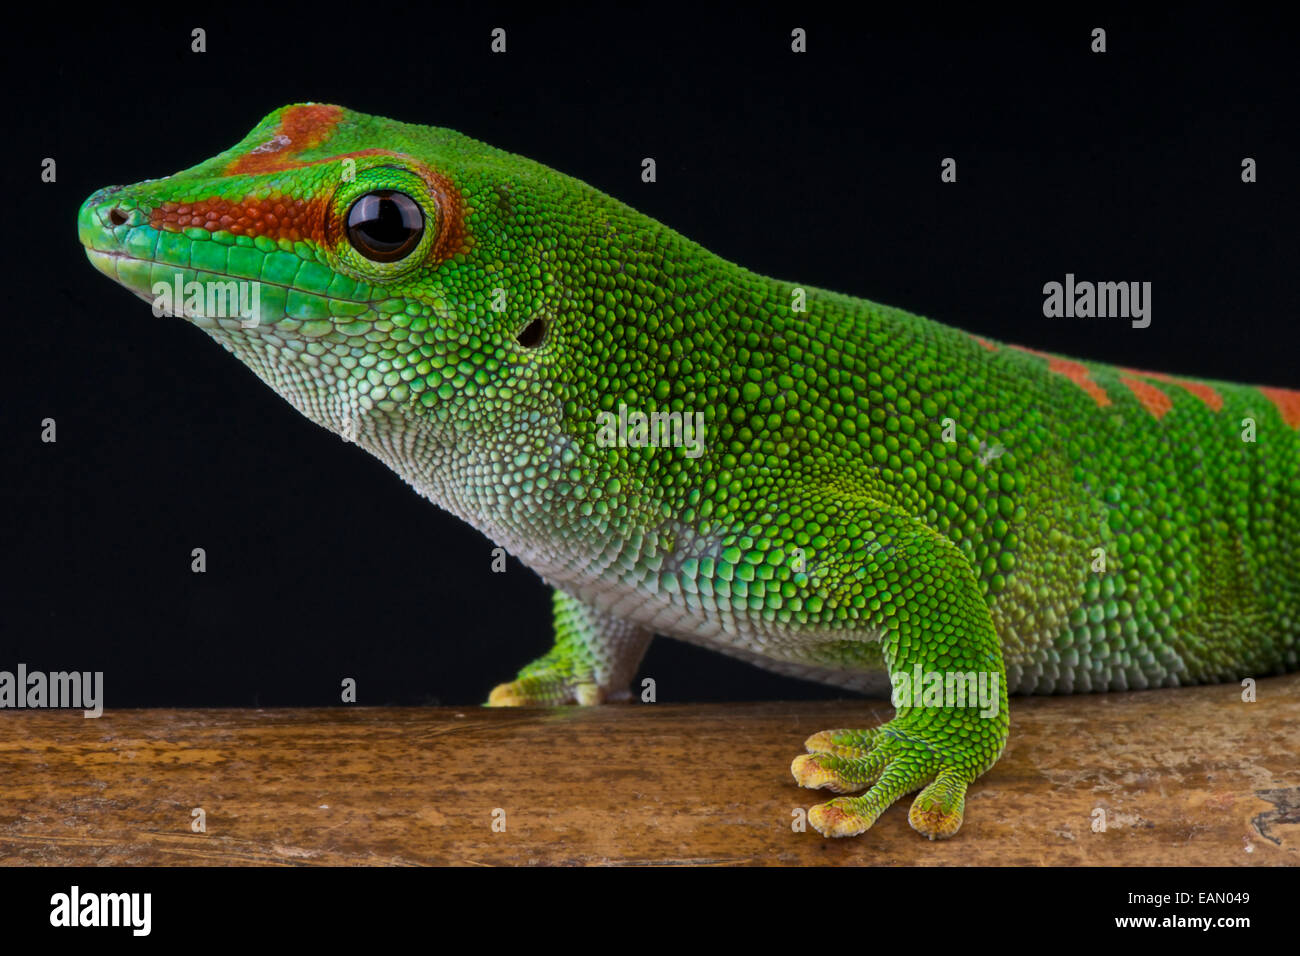 Giant day gecko / Phelsuma madagascariensis grandis Stock Photo